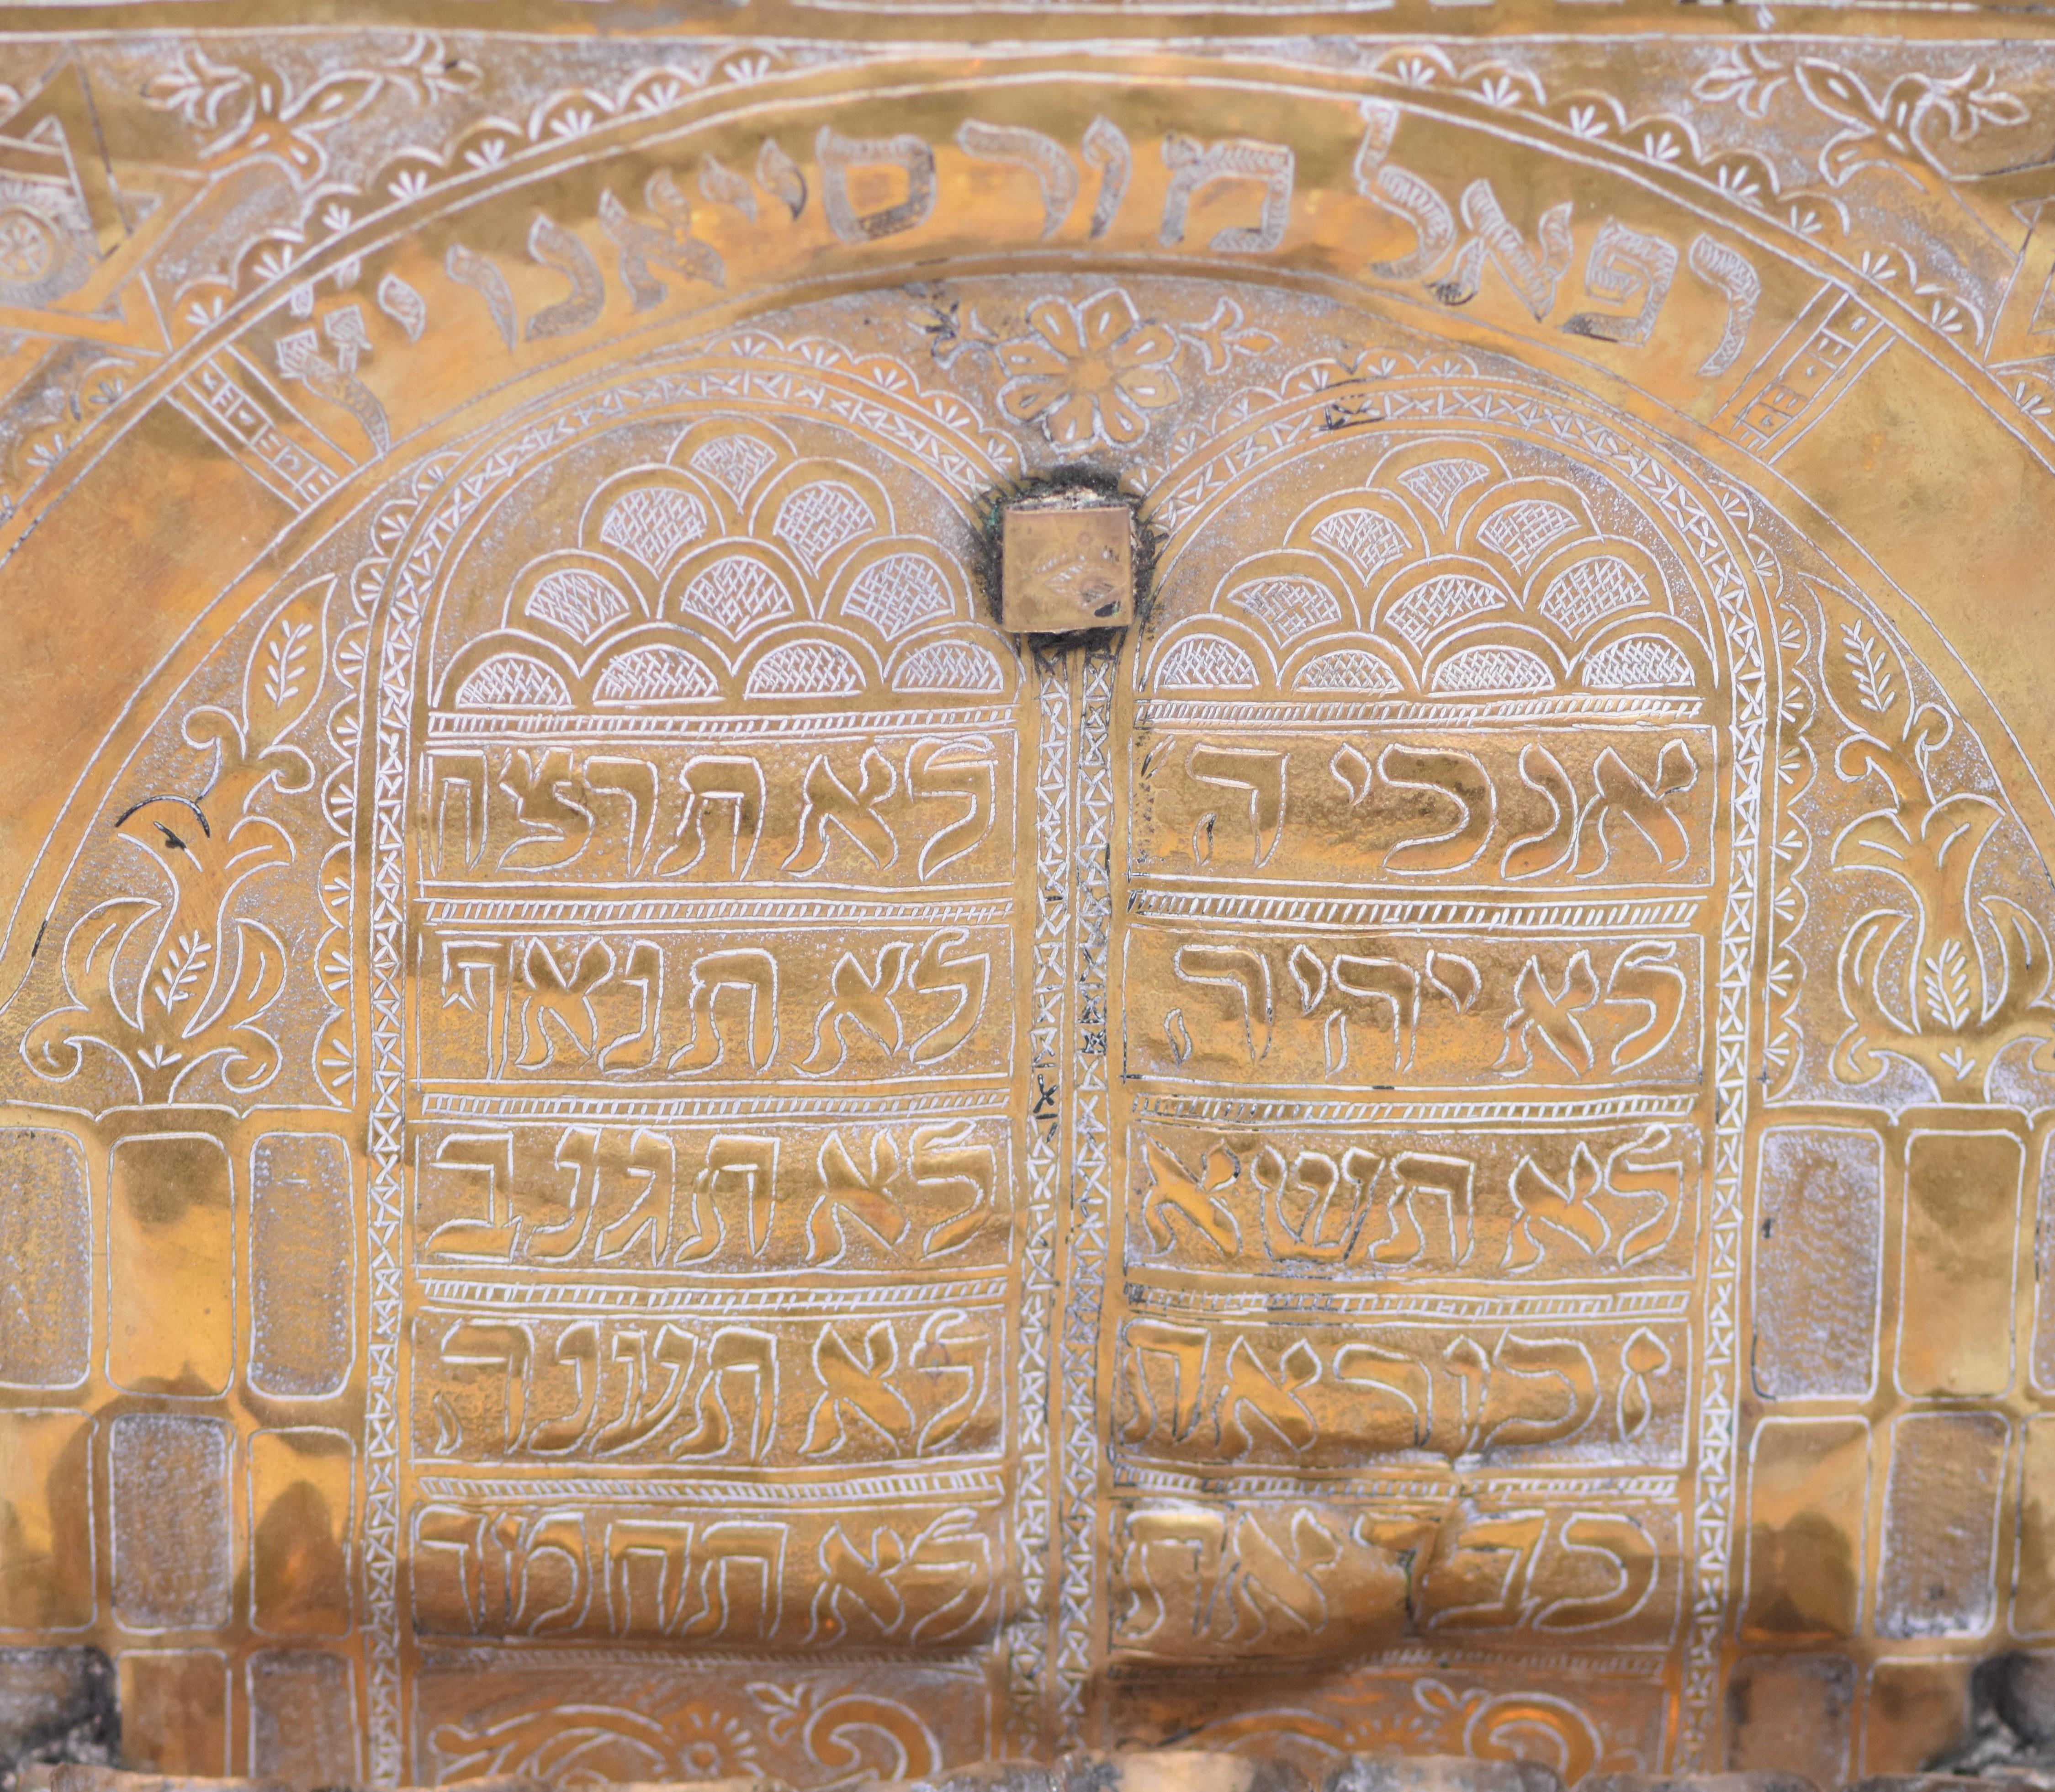 Lampe de Hanukkah en laiton martelé et gravé à la main, Maroc, 19e siècle, avec des fontaines à huile à becs pincés fixées à la plaque arrière. Un décor découpé à la main en forme de feuilles montre des feuilles de laiton martelé gravées pour